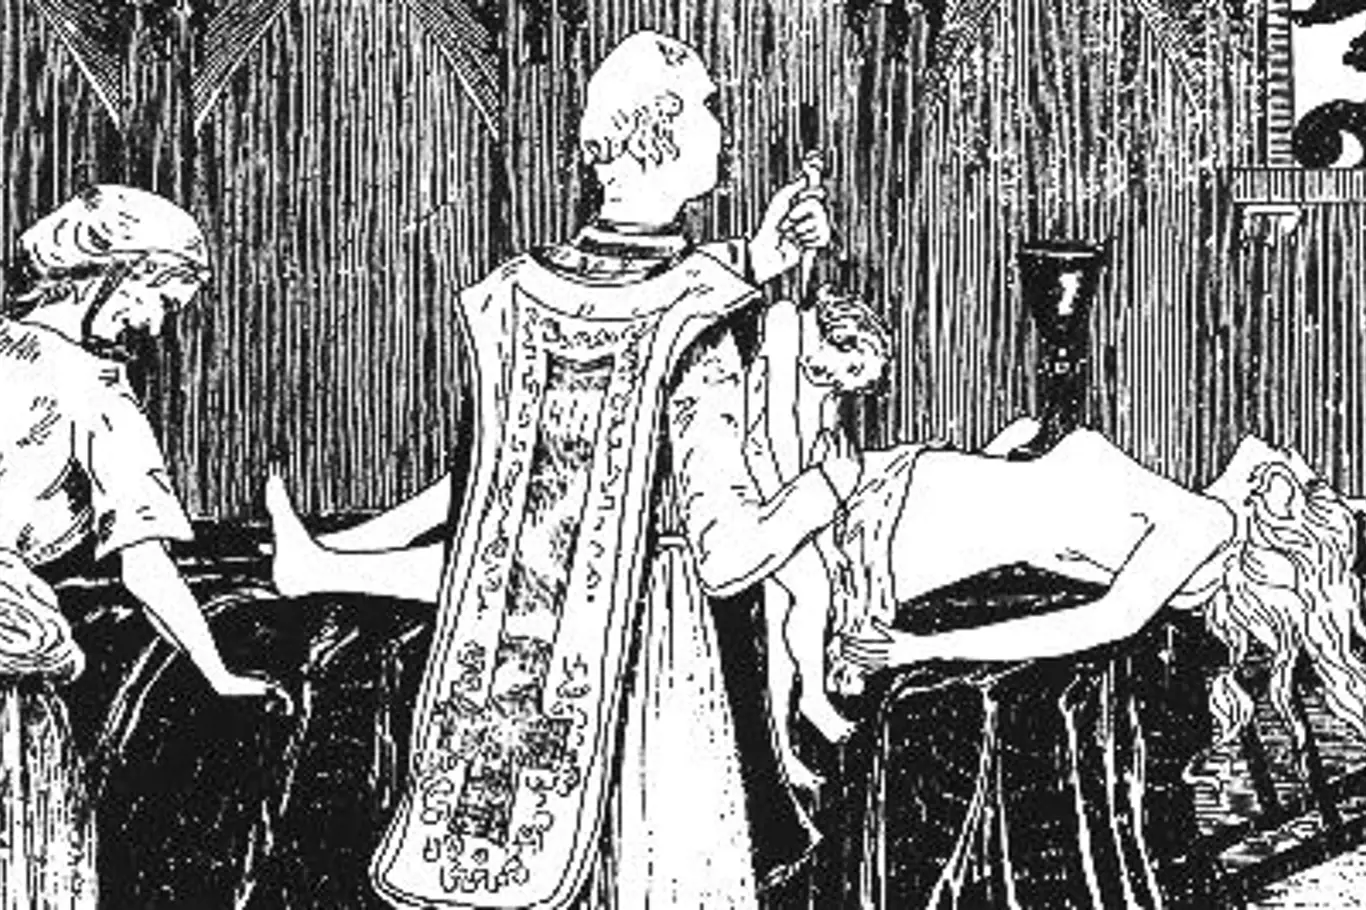 Catherine Monvoisin a kněz Étienne Guibourg jsou zobrazeni, jak vykonávají černou mši pro Madame de Montespan (ležící na oltáři) na rytině Henry de Malvosta z roku 1895.